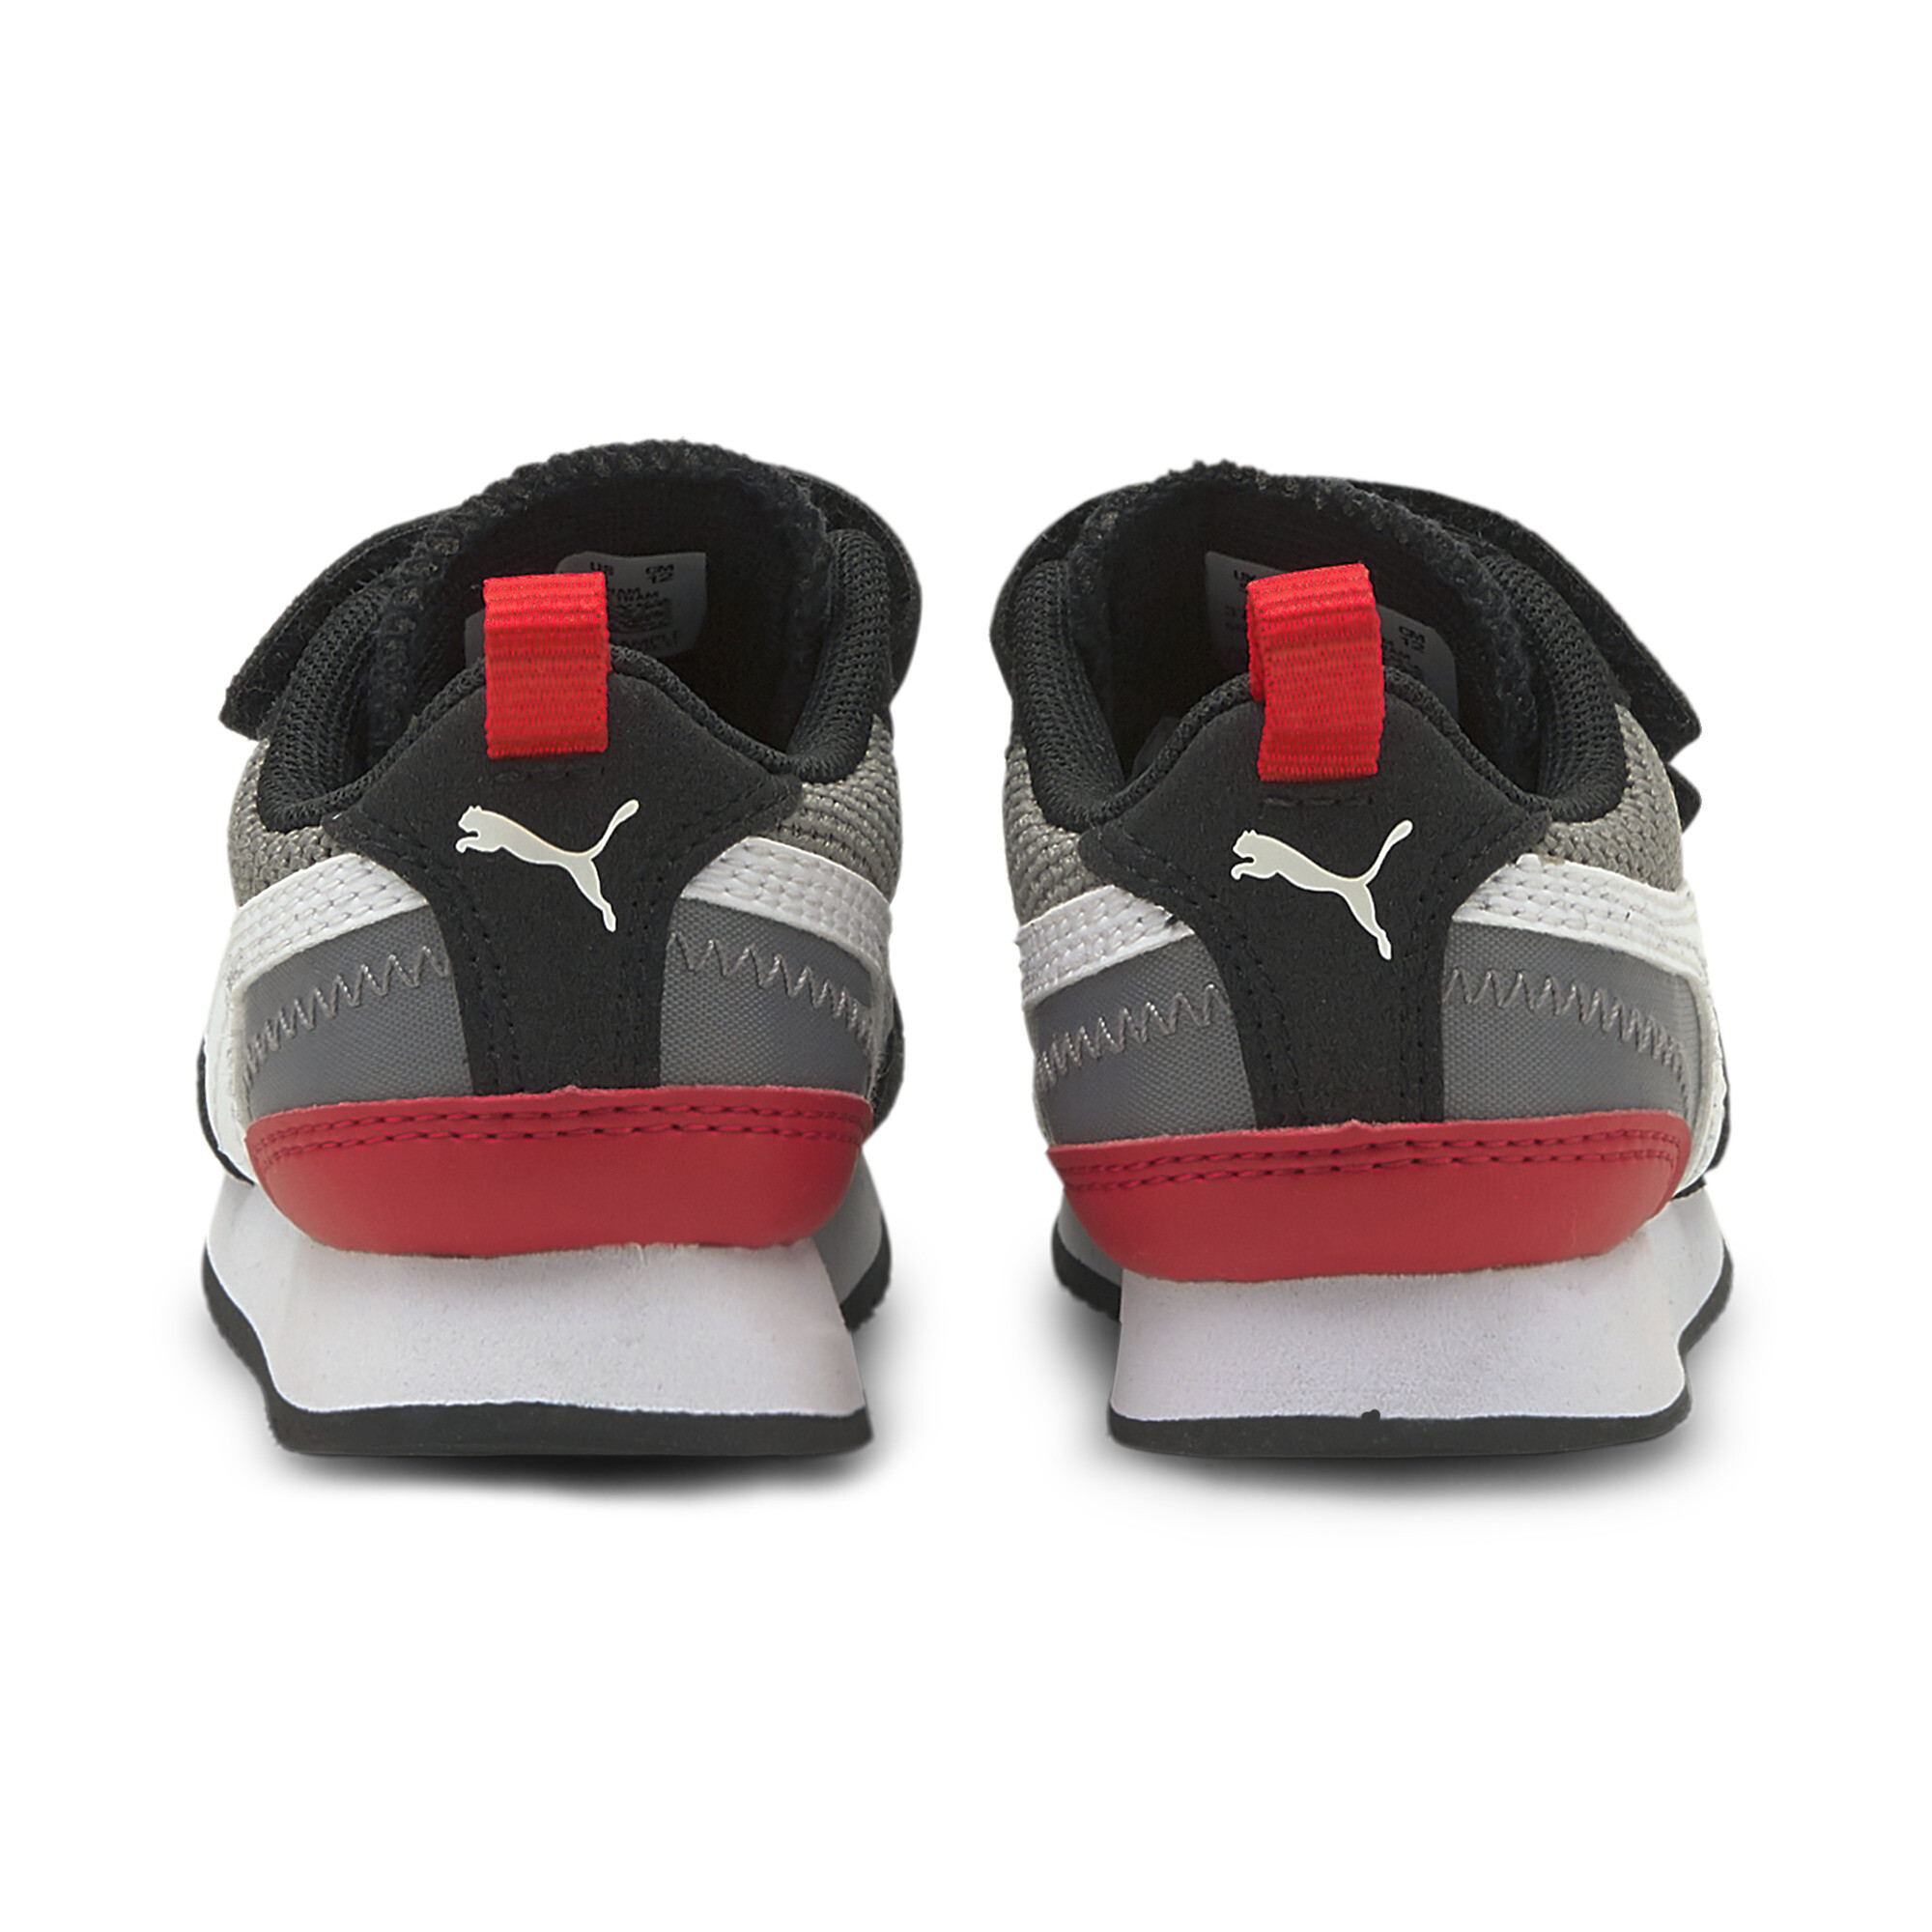 PUMA Toddler R78 Shoes | eBay